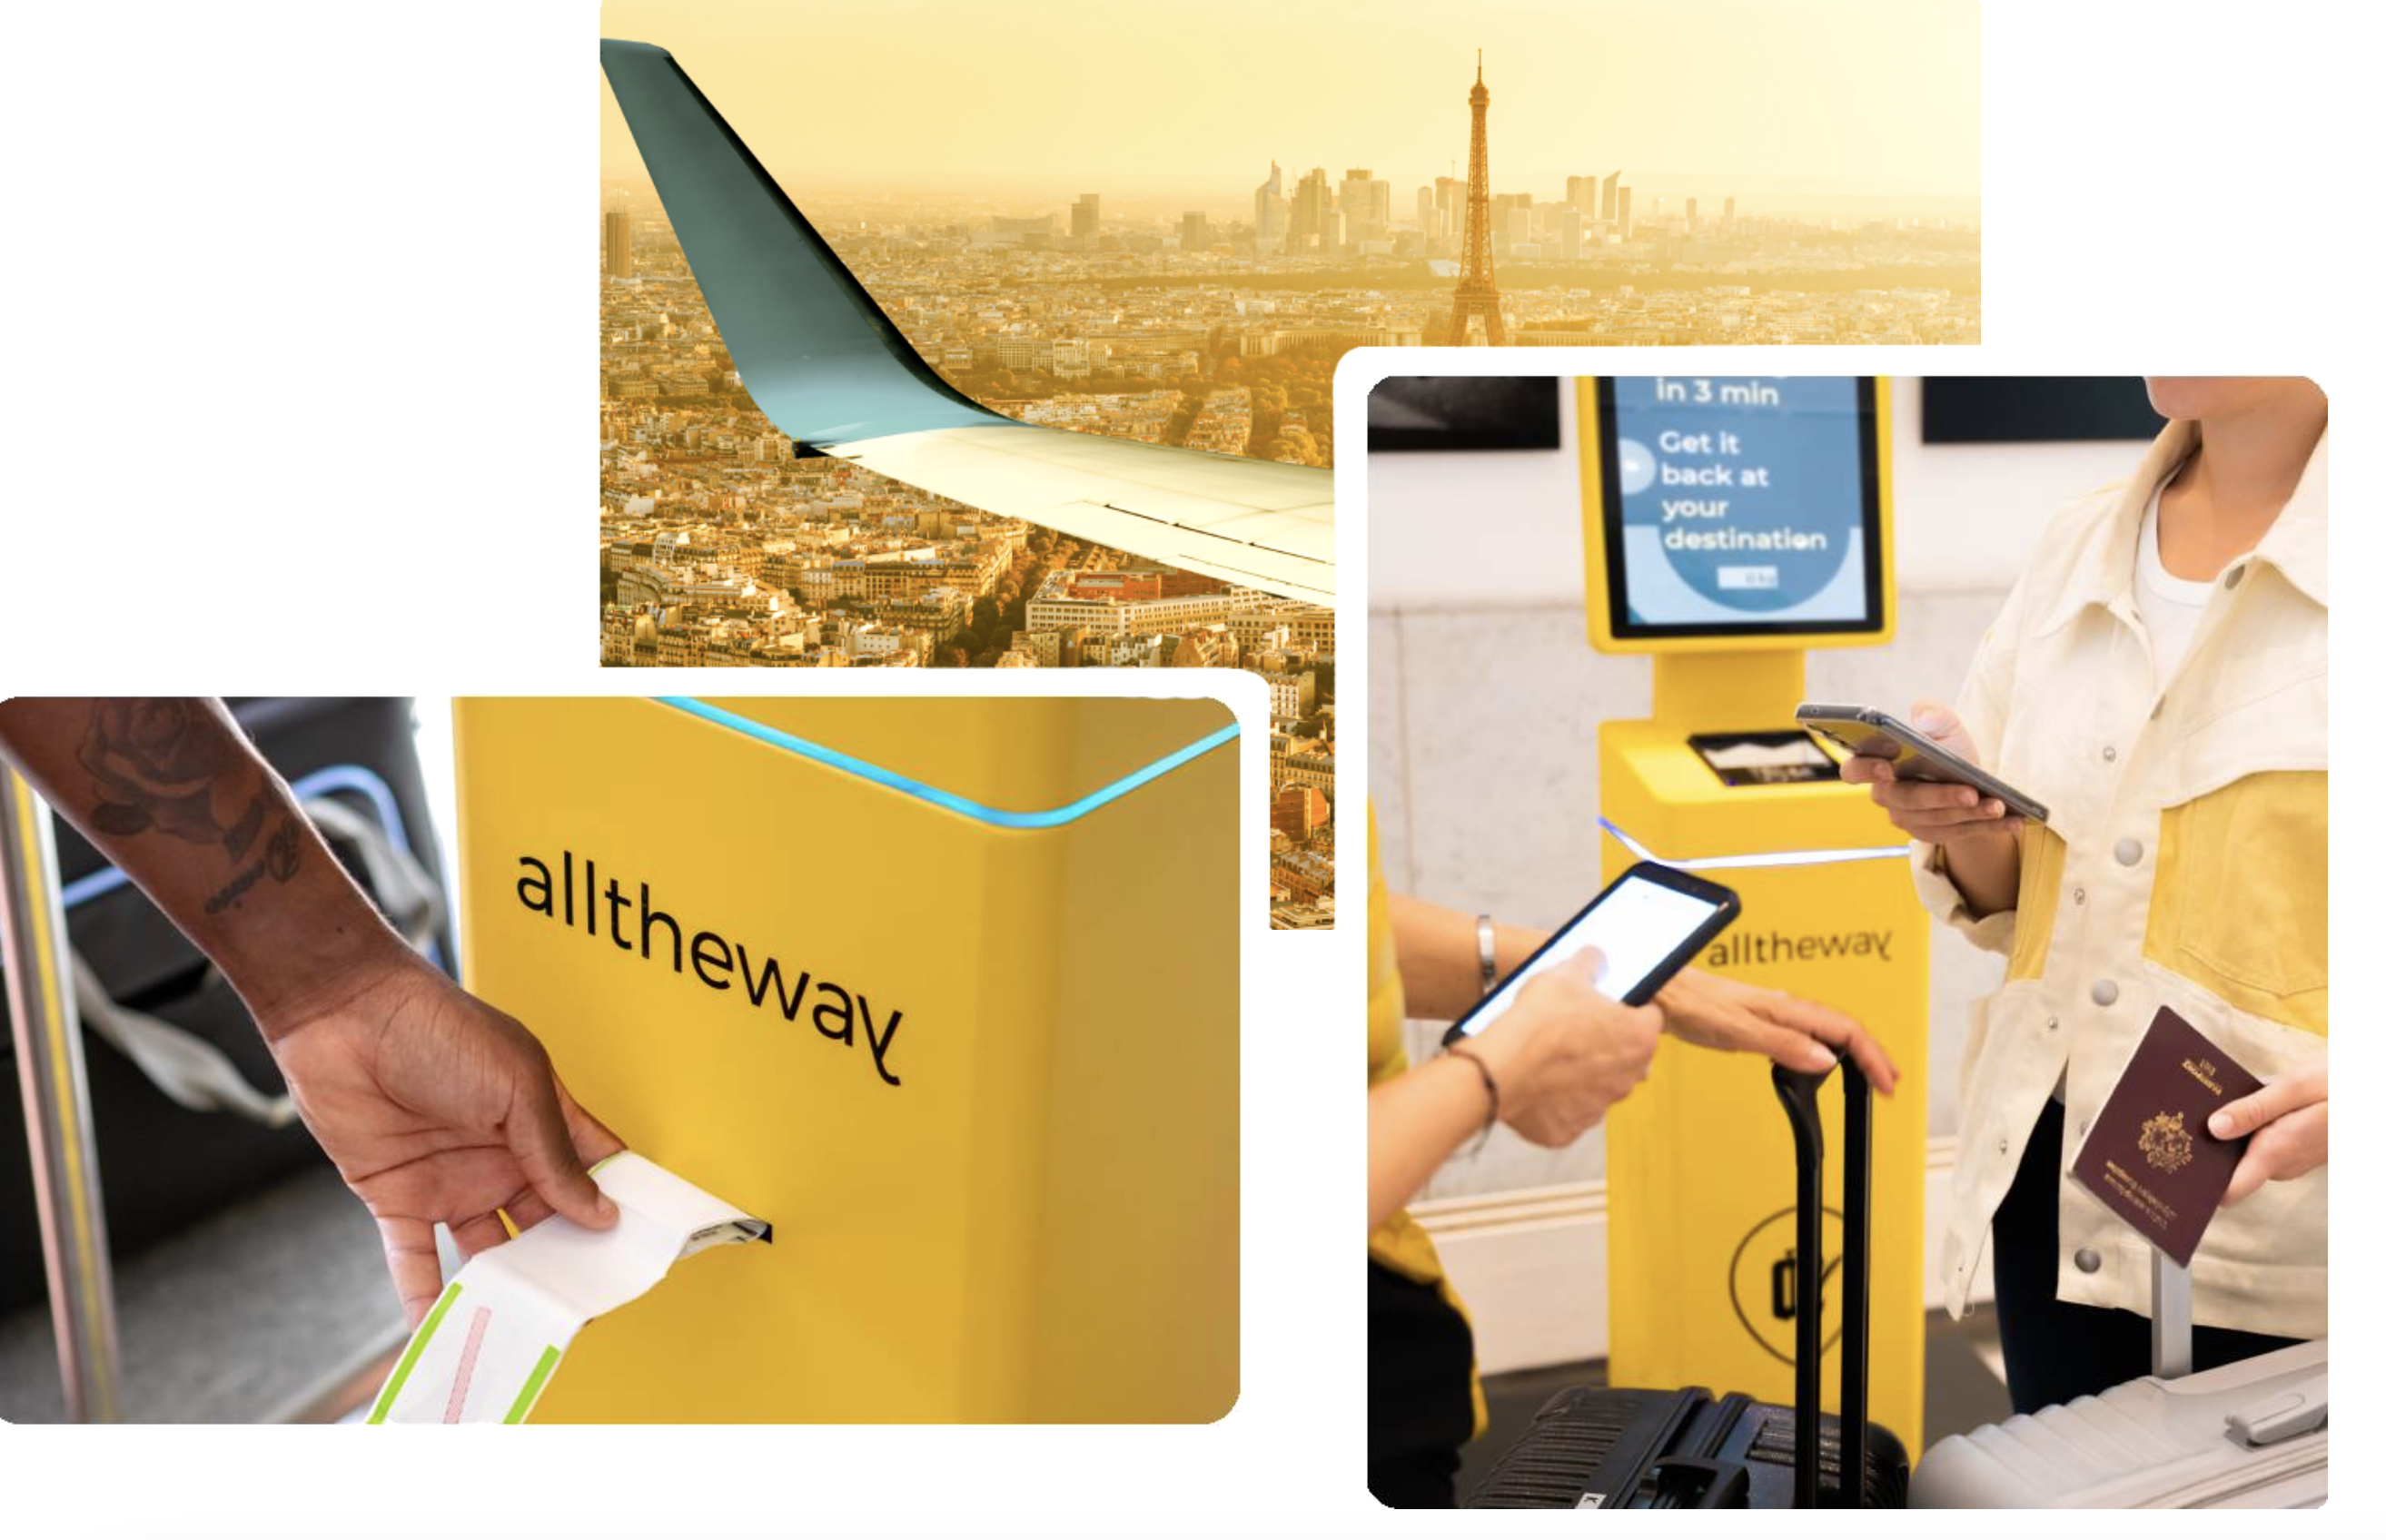 alltheway service bagage mobilite reduite fauteuil roulant aeroport voyage JO Paris 2024